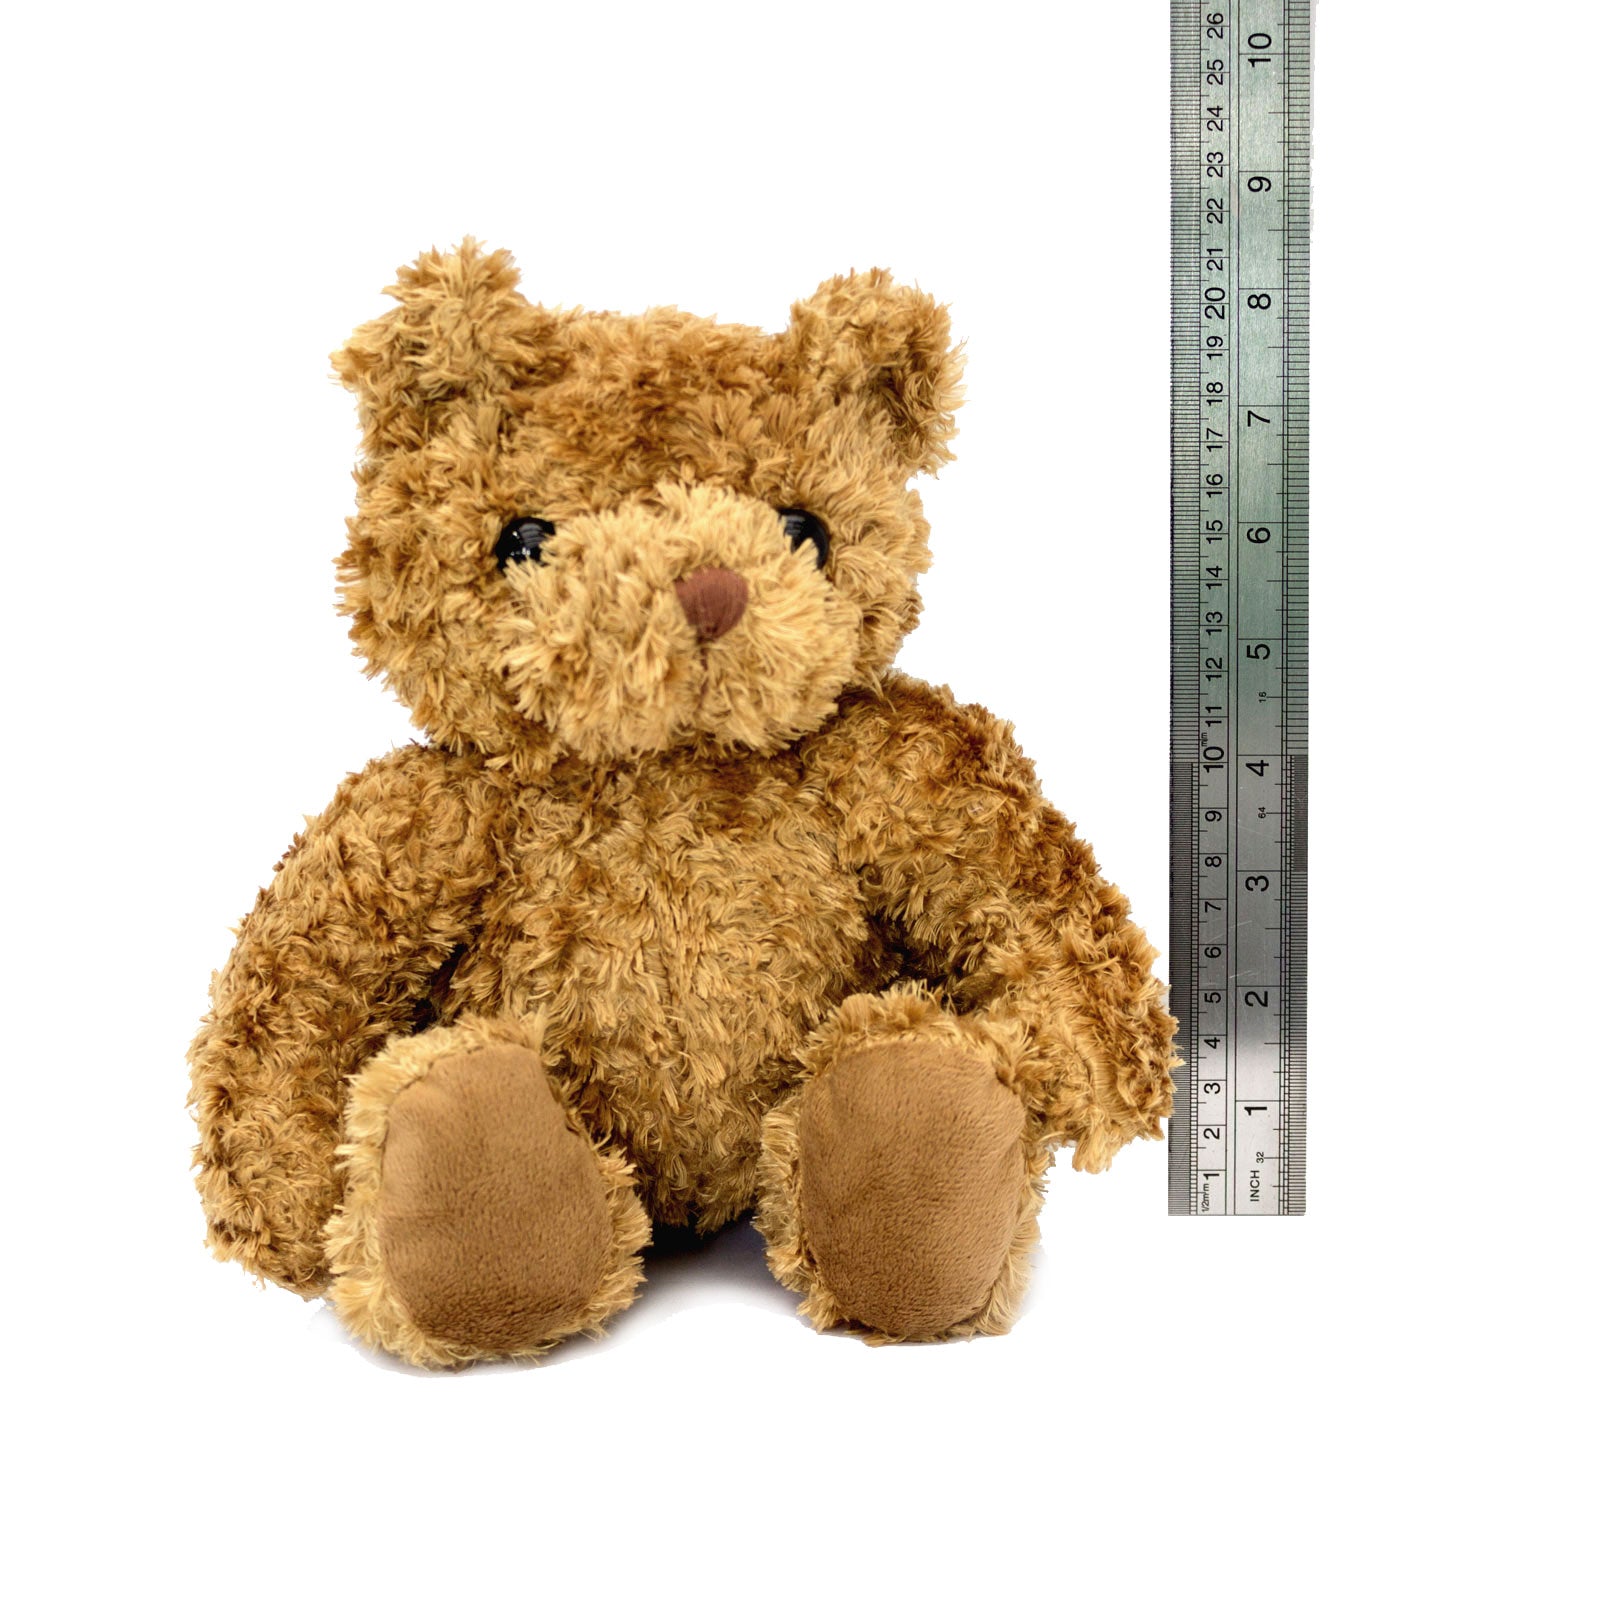 Get Well Soon Amyra - Teddy Bear